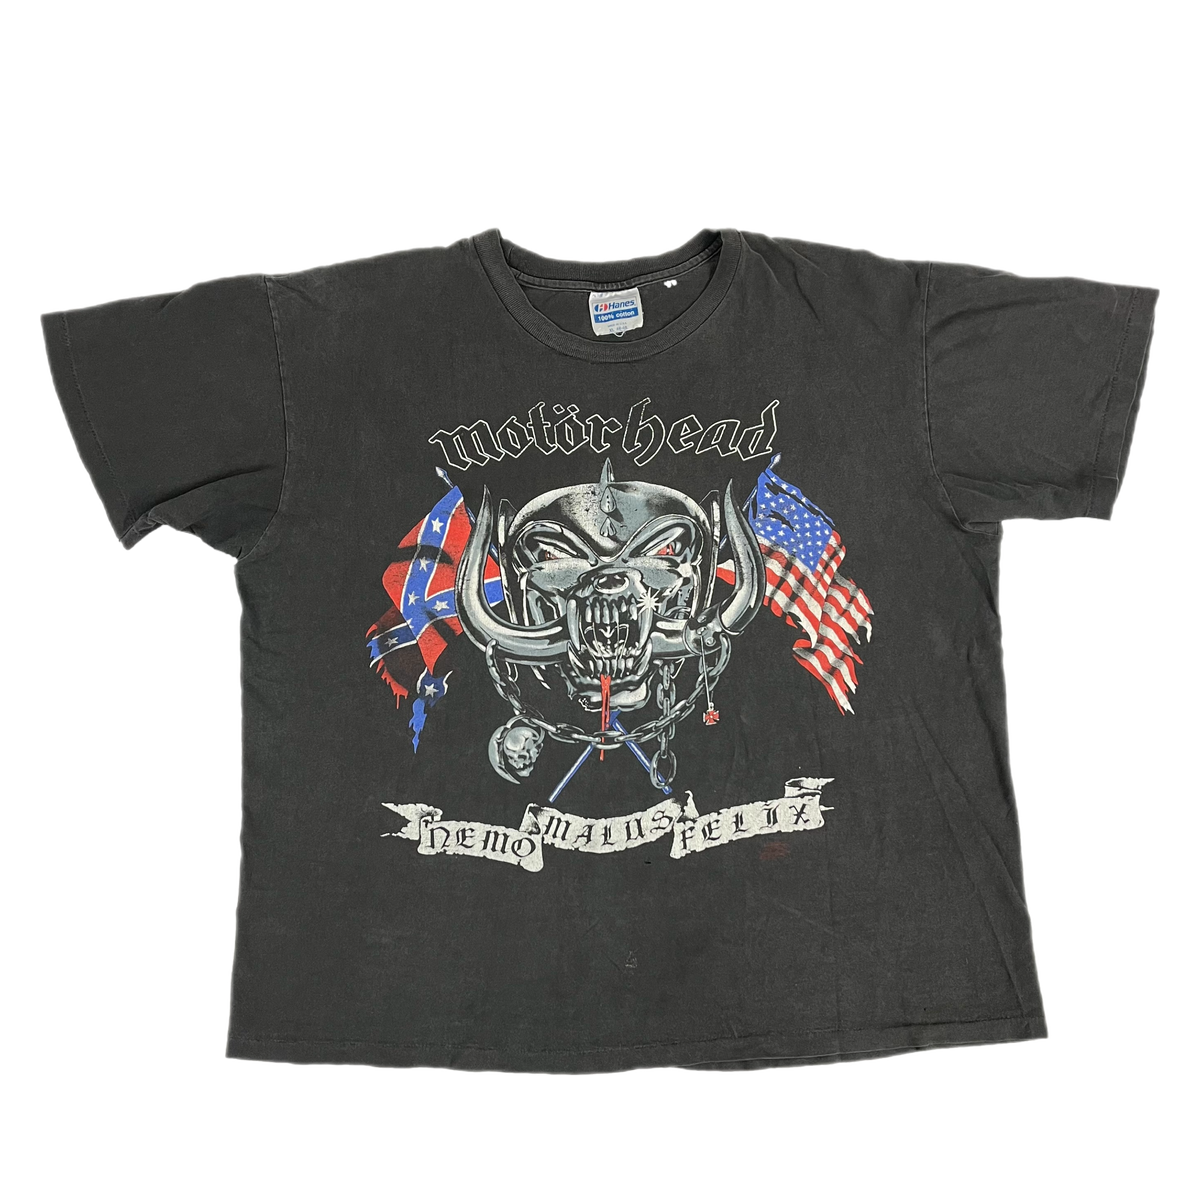 Vintage Motörhead &quot;America 1991&quot; T-Shirt